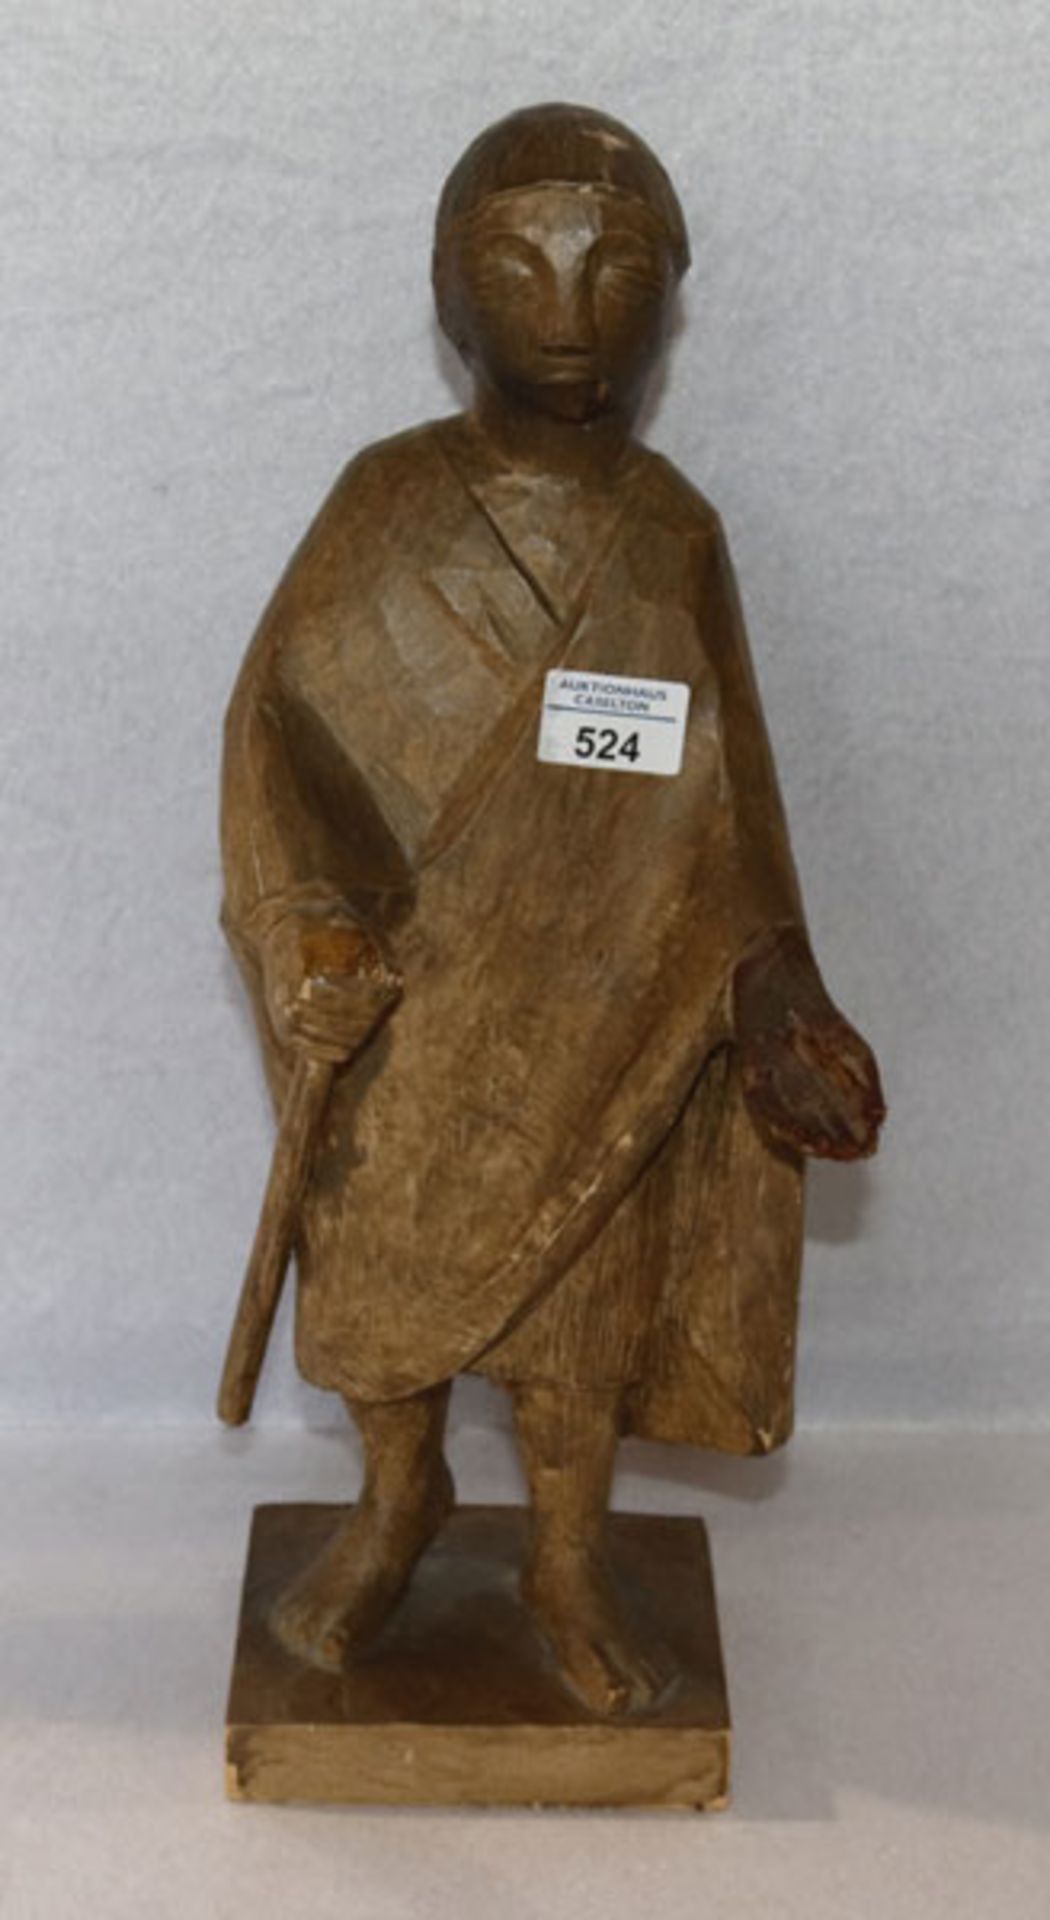 Holz Figurenskulptur 'Bettler', gebeizt, H 48 cm, beschädigt und geklebt